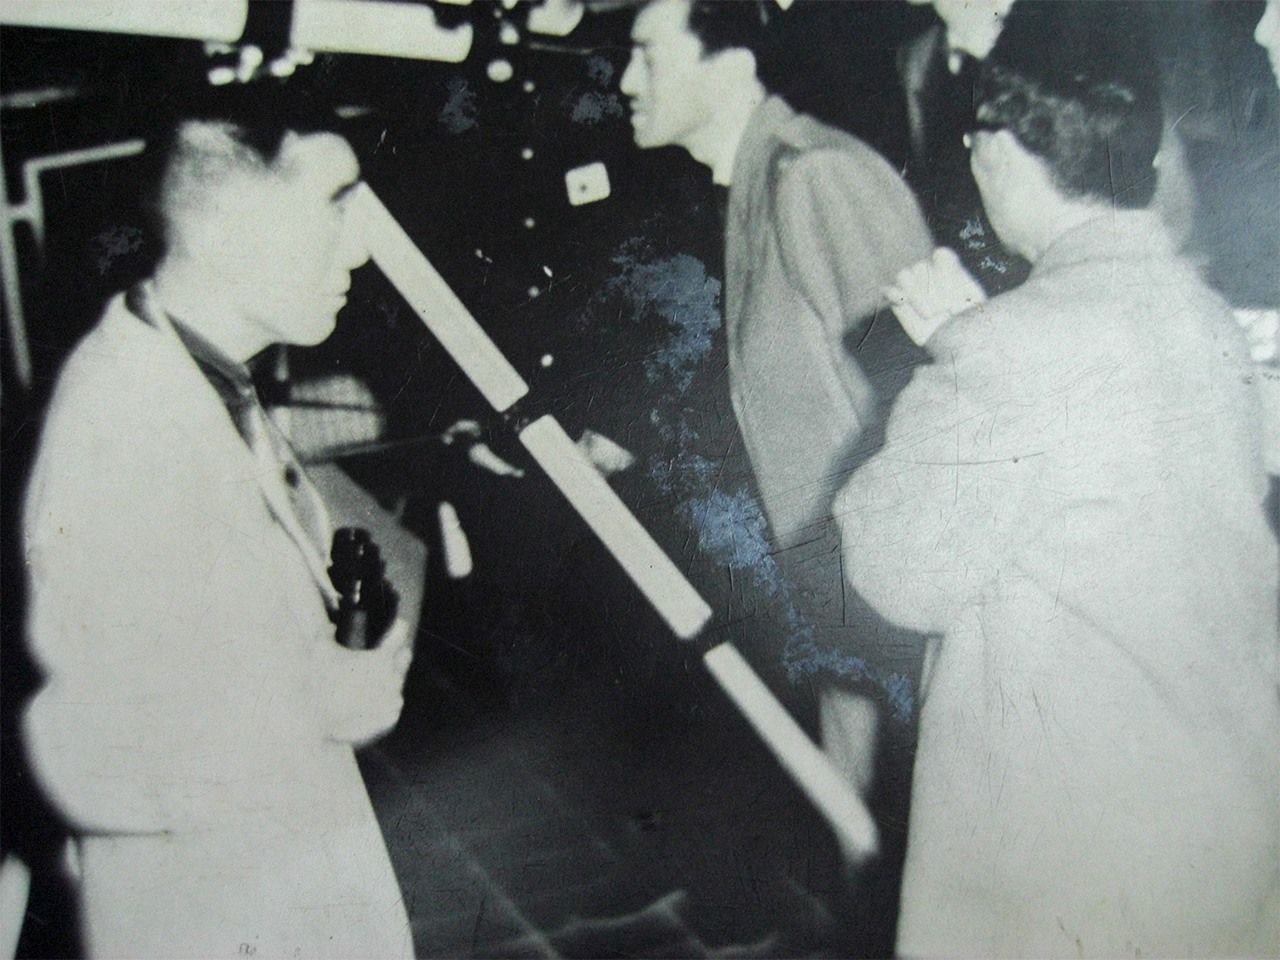 Mishima Yukio participa en un evento de observación en Hibiya, Tokio, en junio de 1957 (imagen cortesía de UFO Fureaikan).